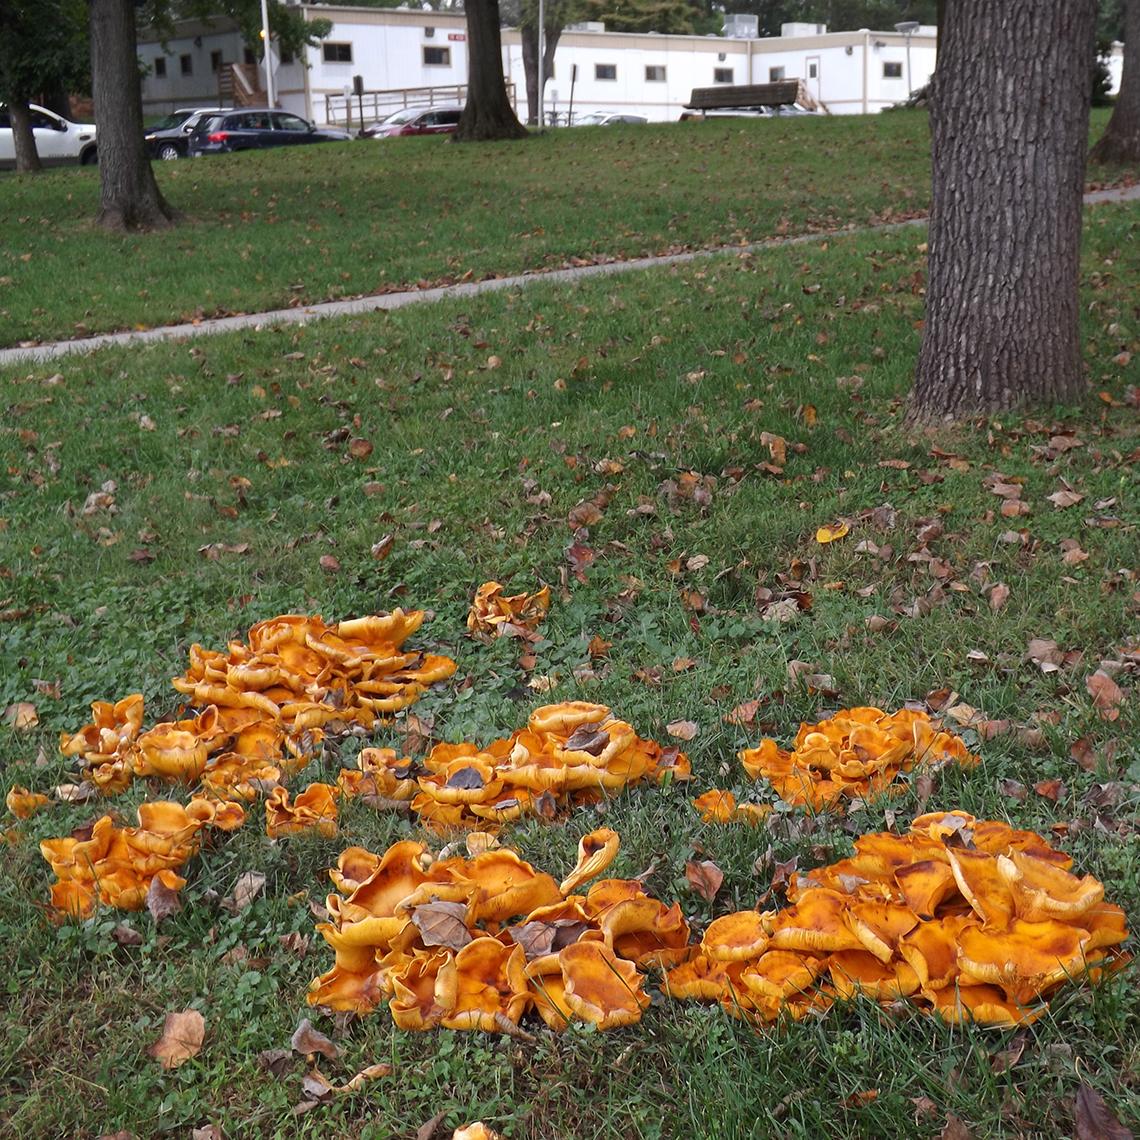  Bright orange mushrooms